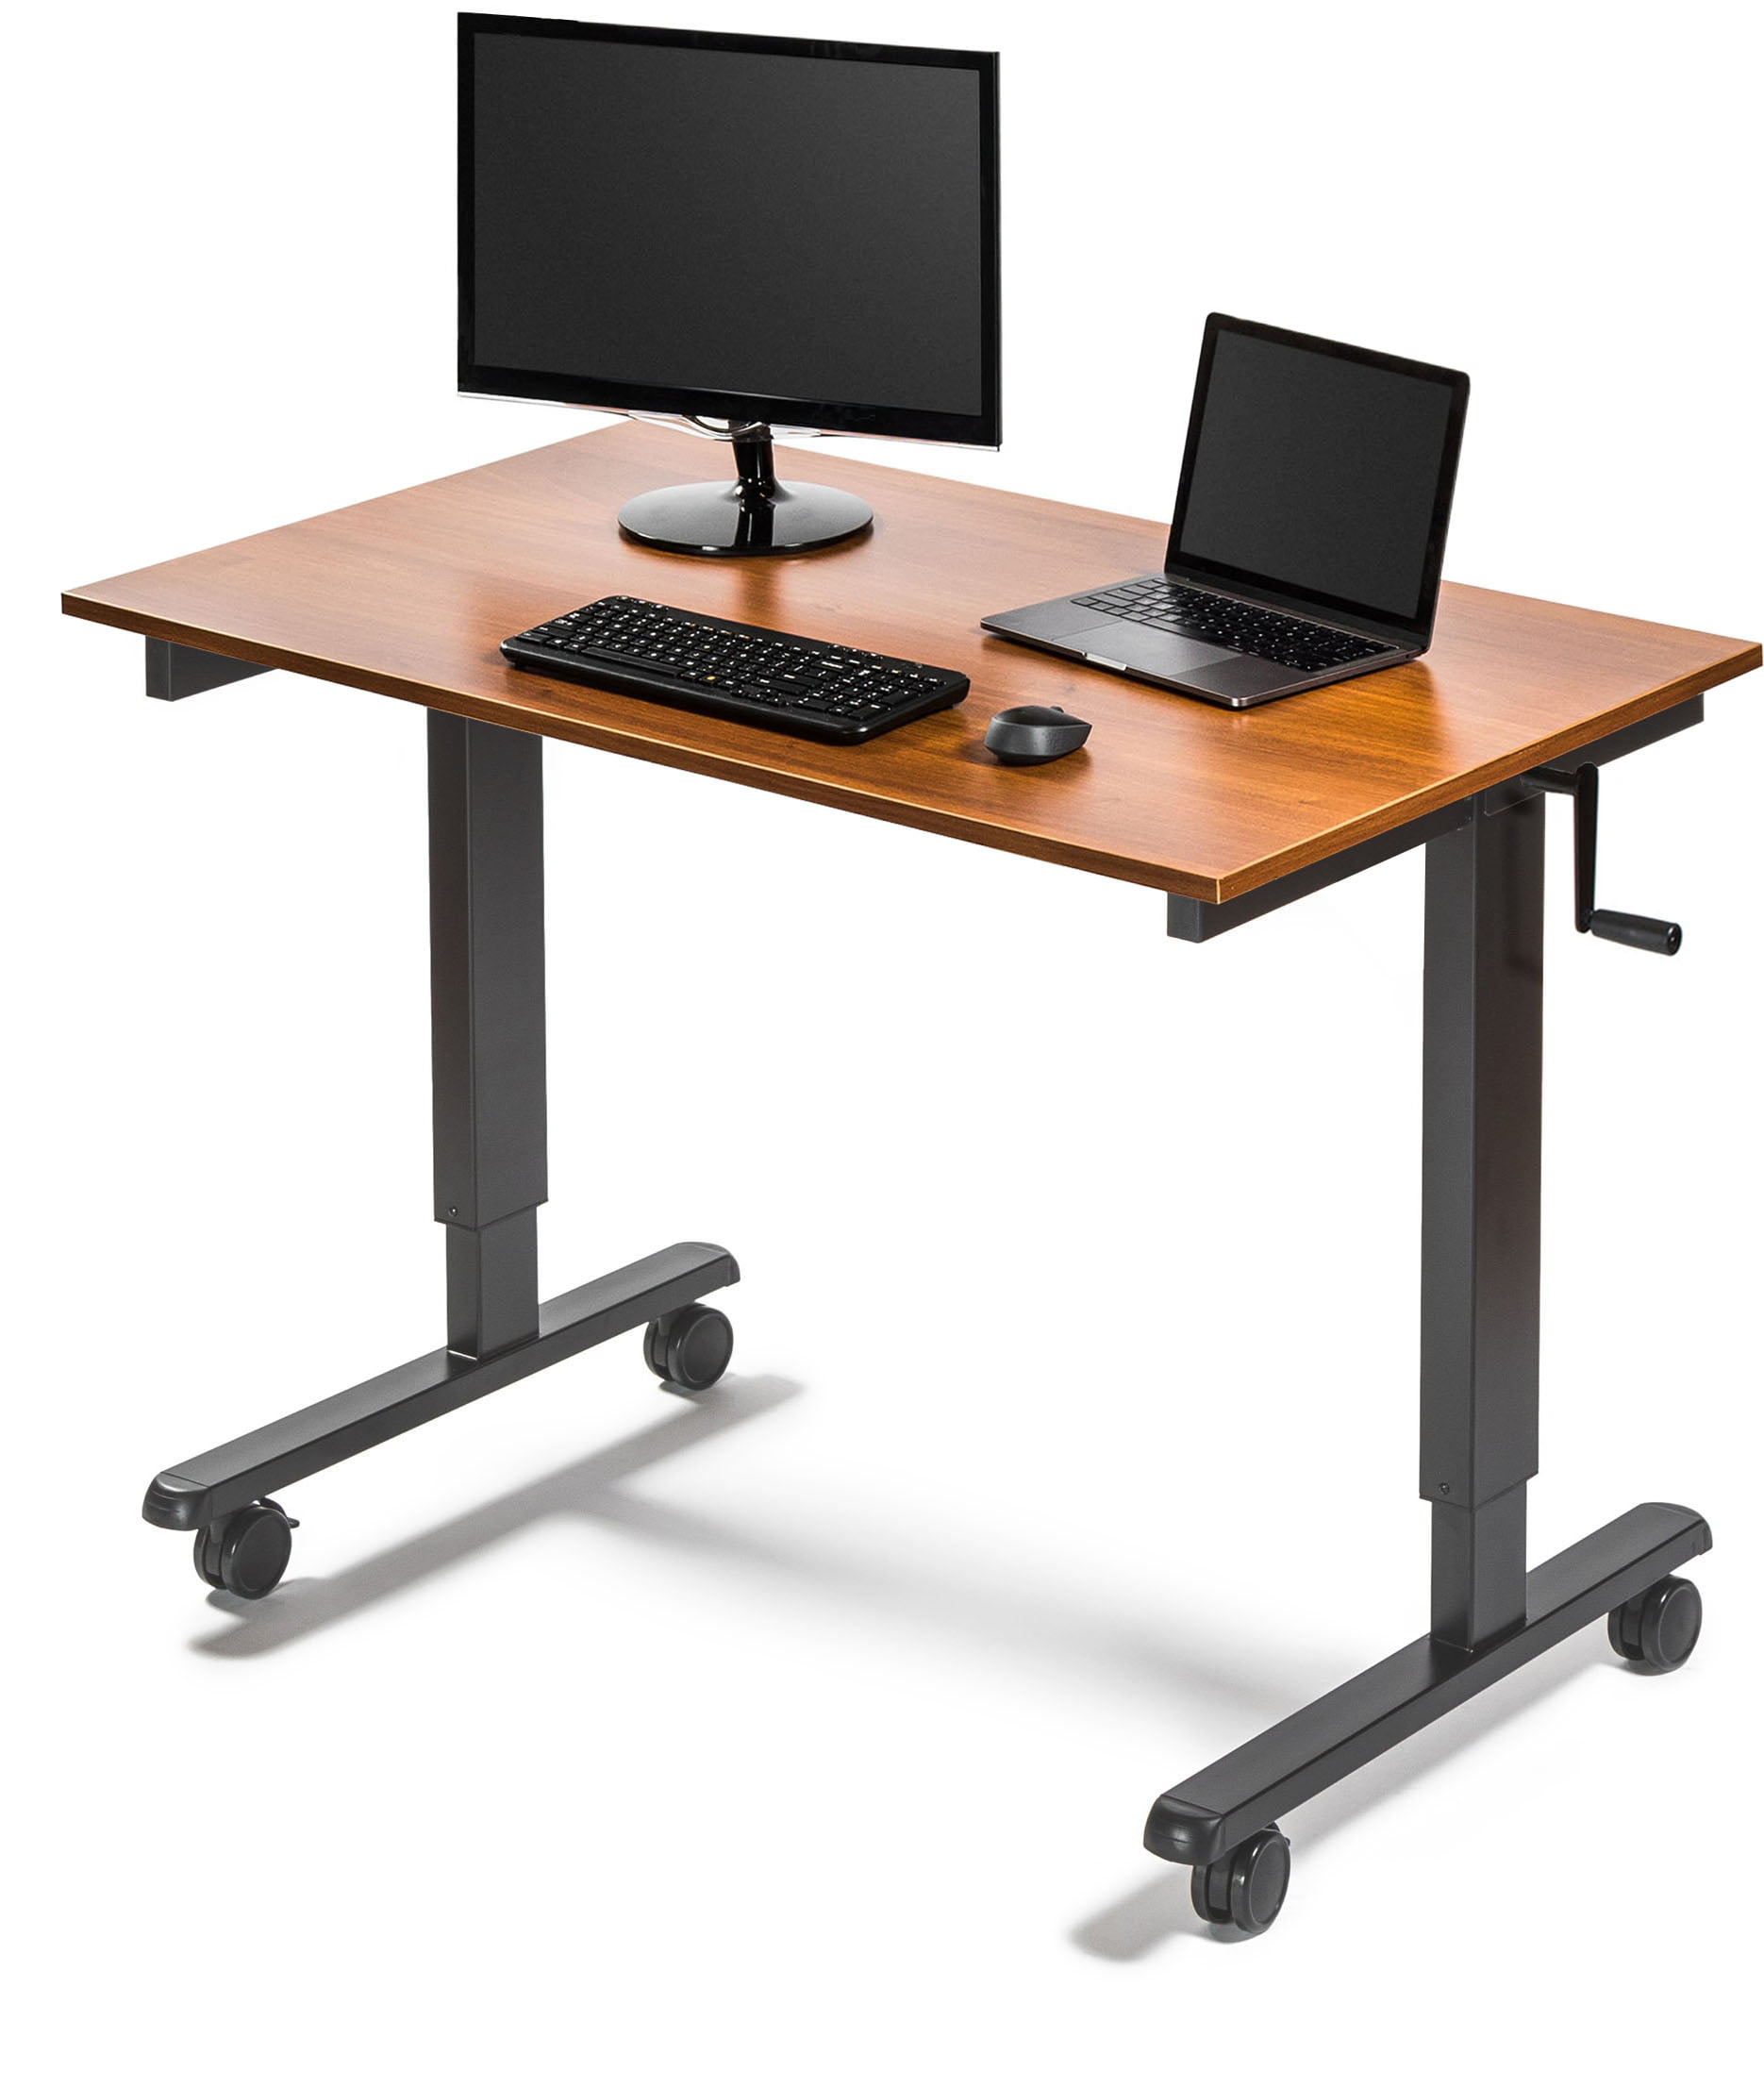 Adjustable stand up desk